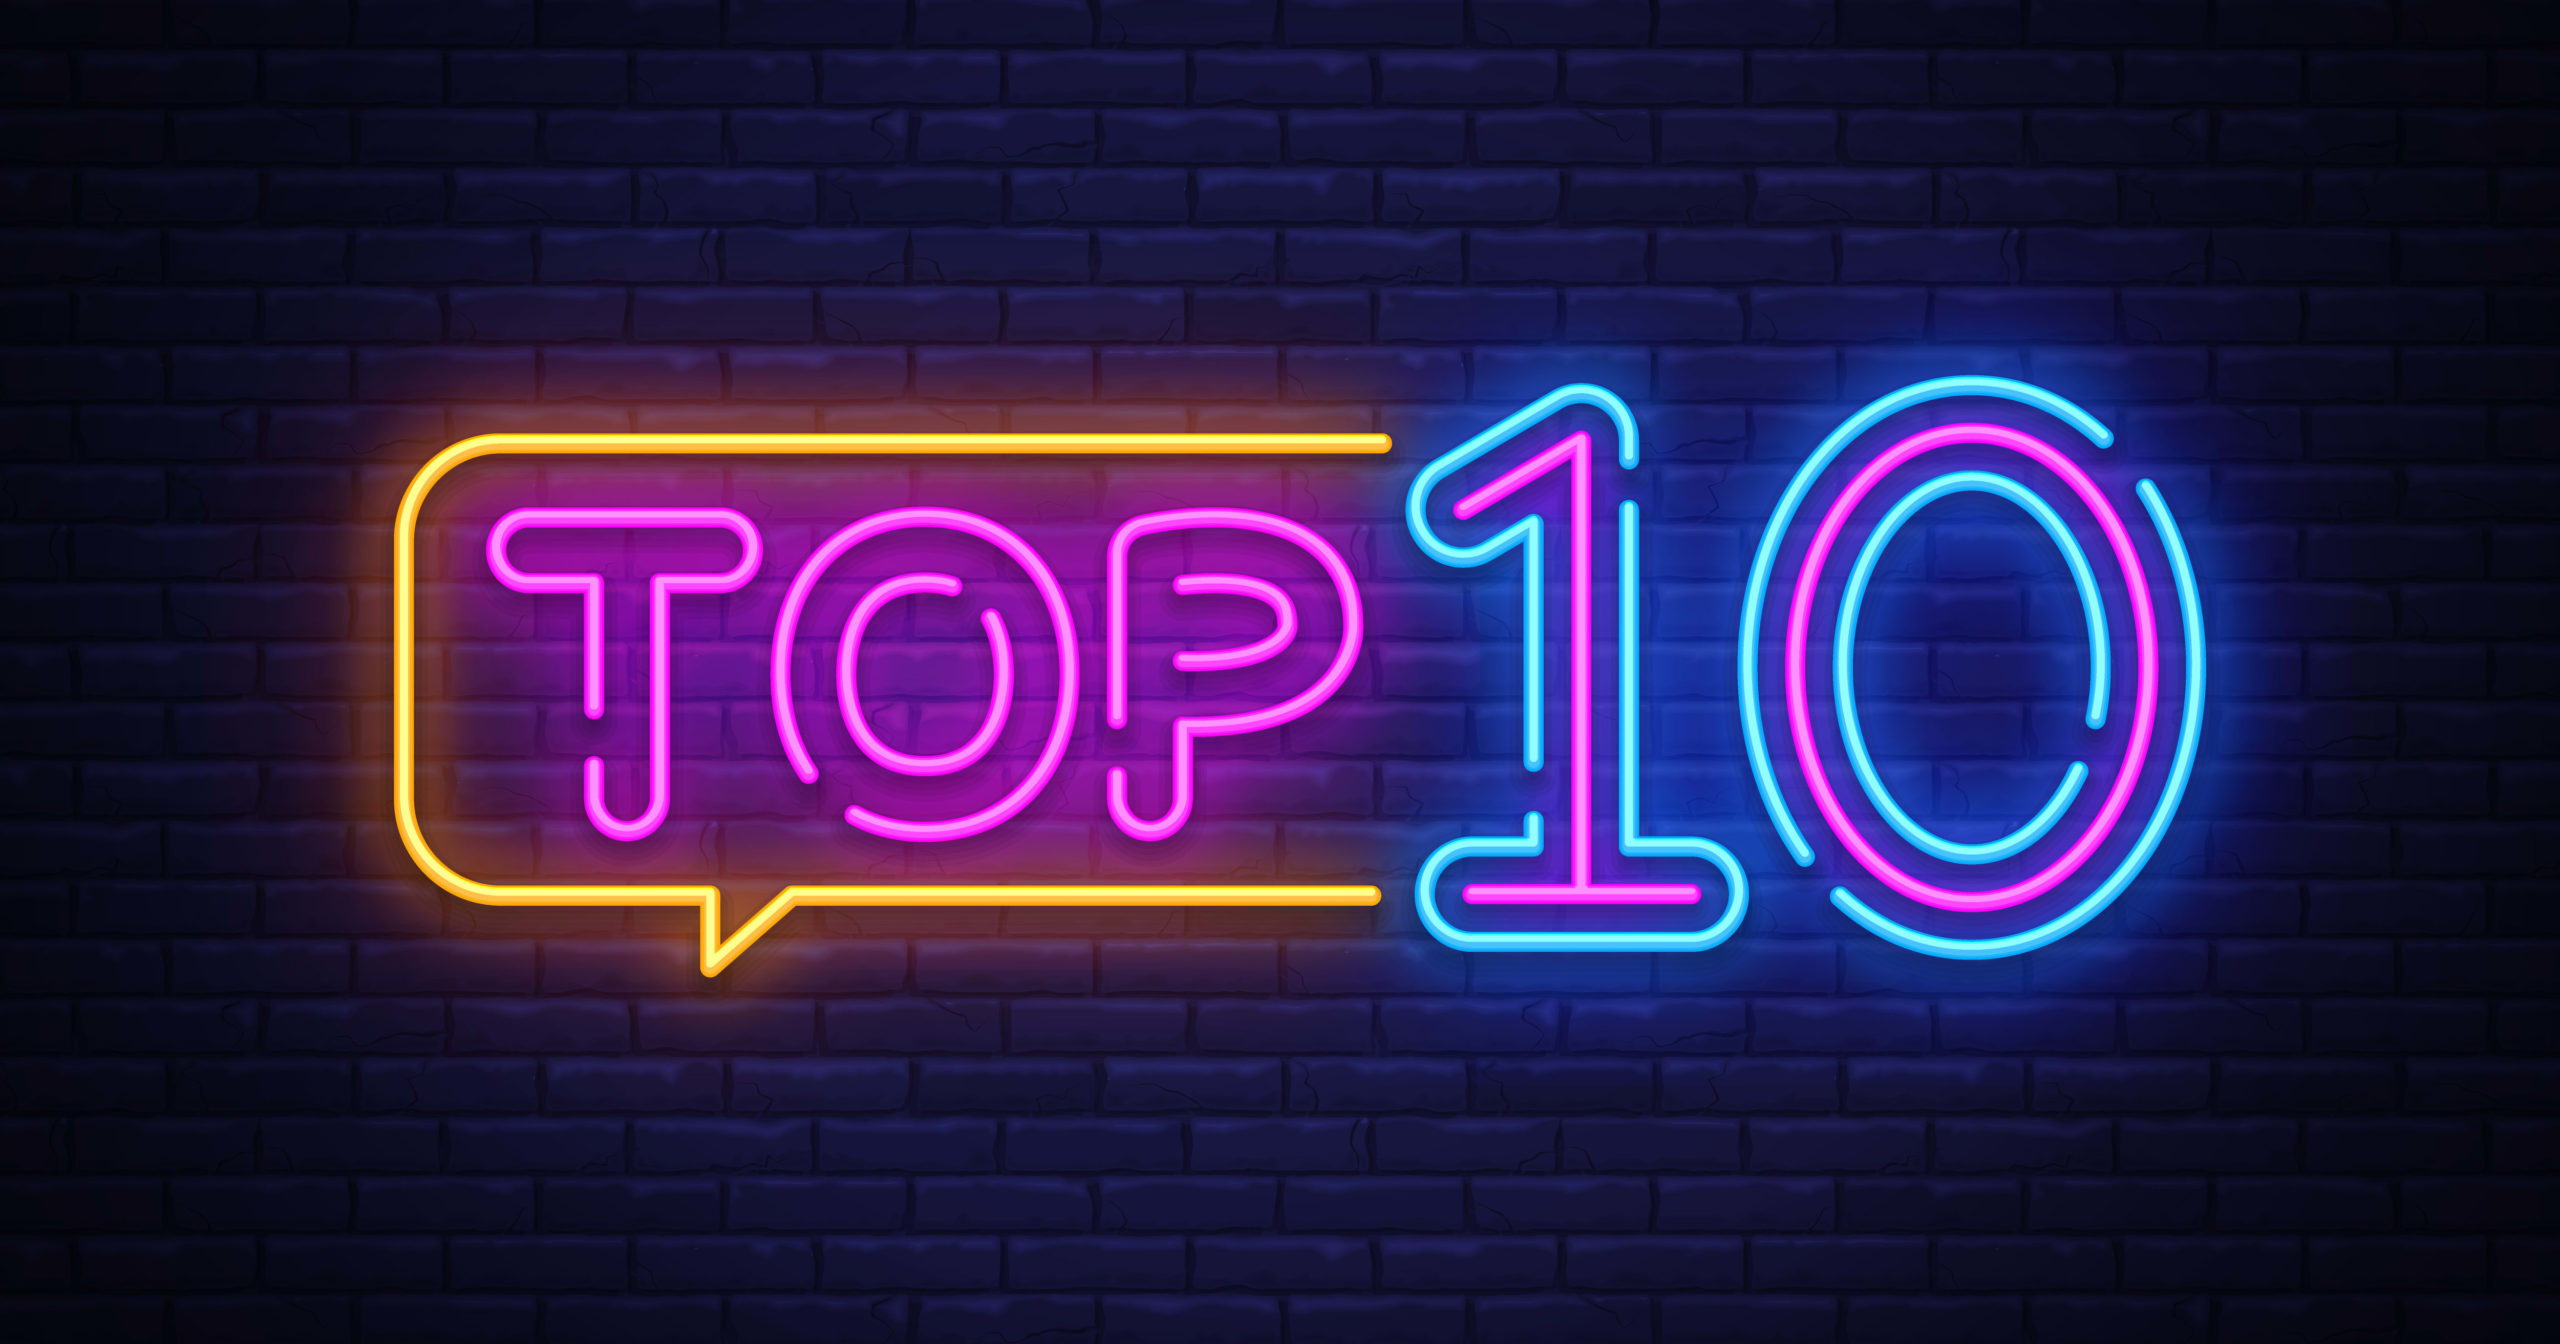 TOP10-1-scaled.jpg